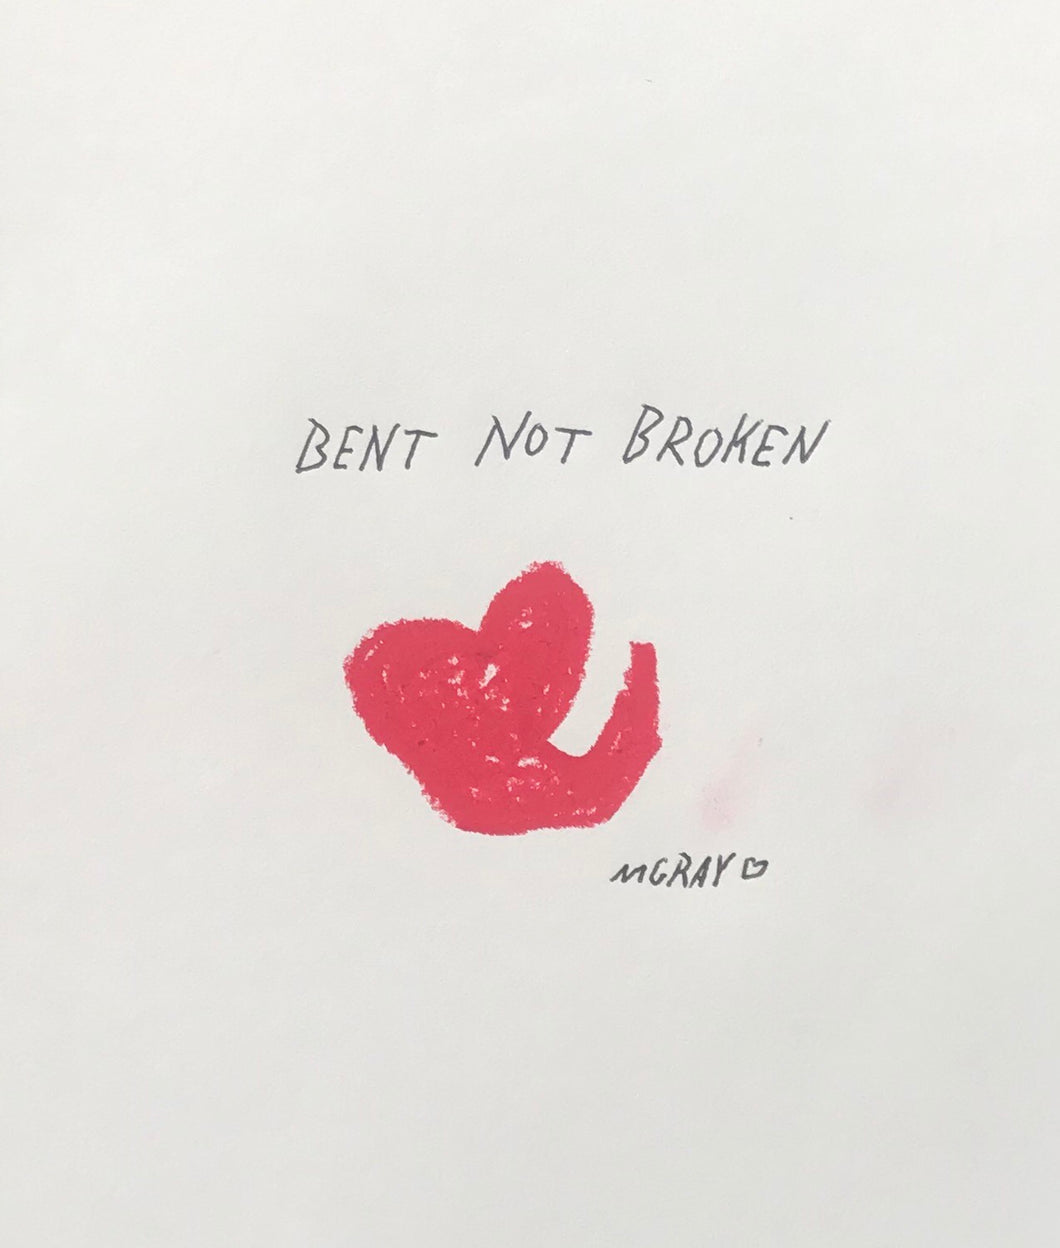 Bent not Broken